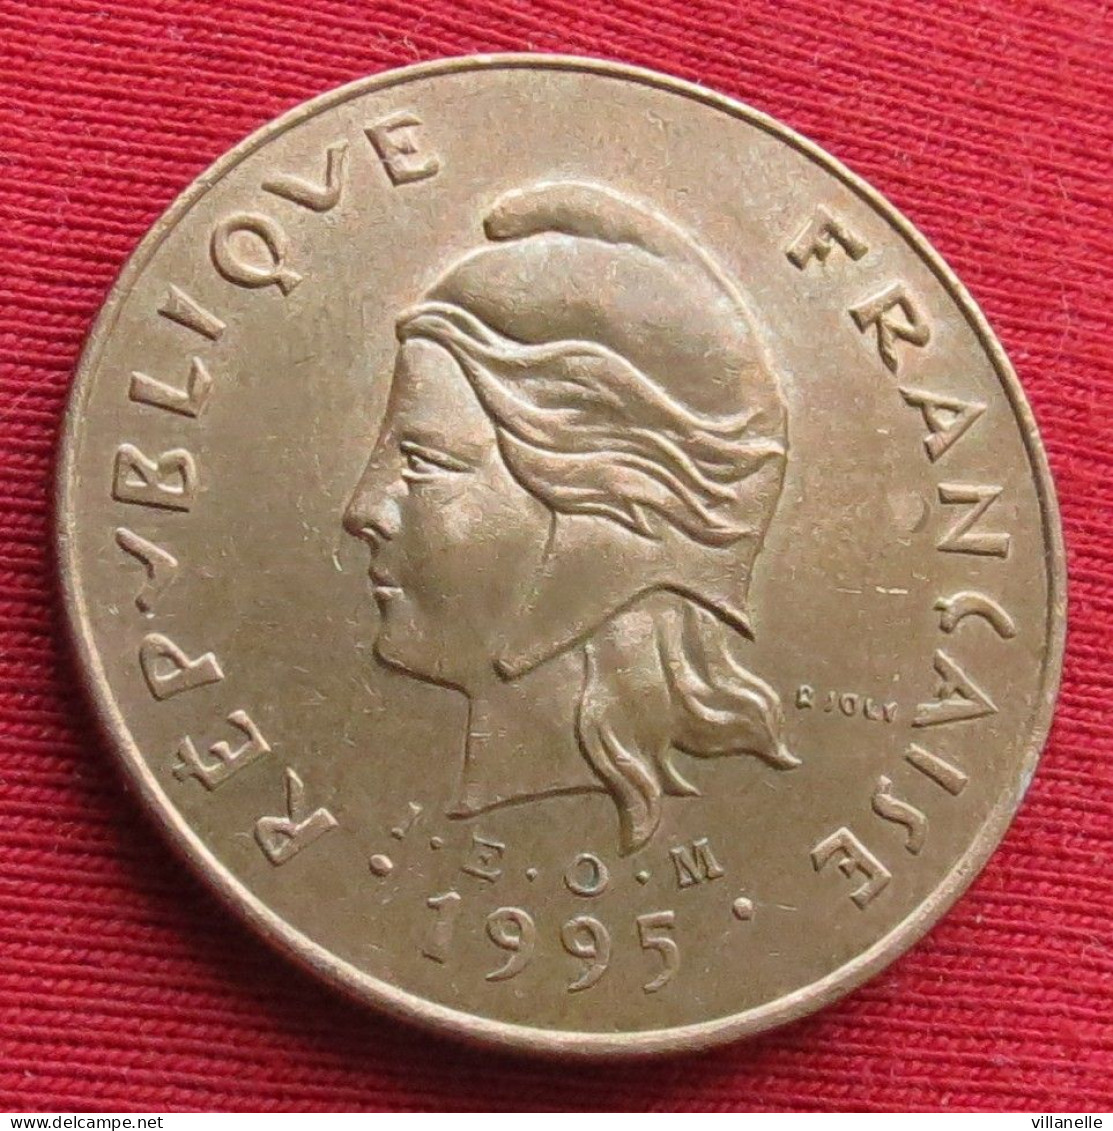 French Polynesia 100 Francs 1995 KM# 14 Lt 1567 *V1T Polynesie Polinesia - Polinesia Francese